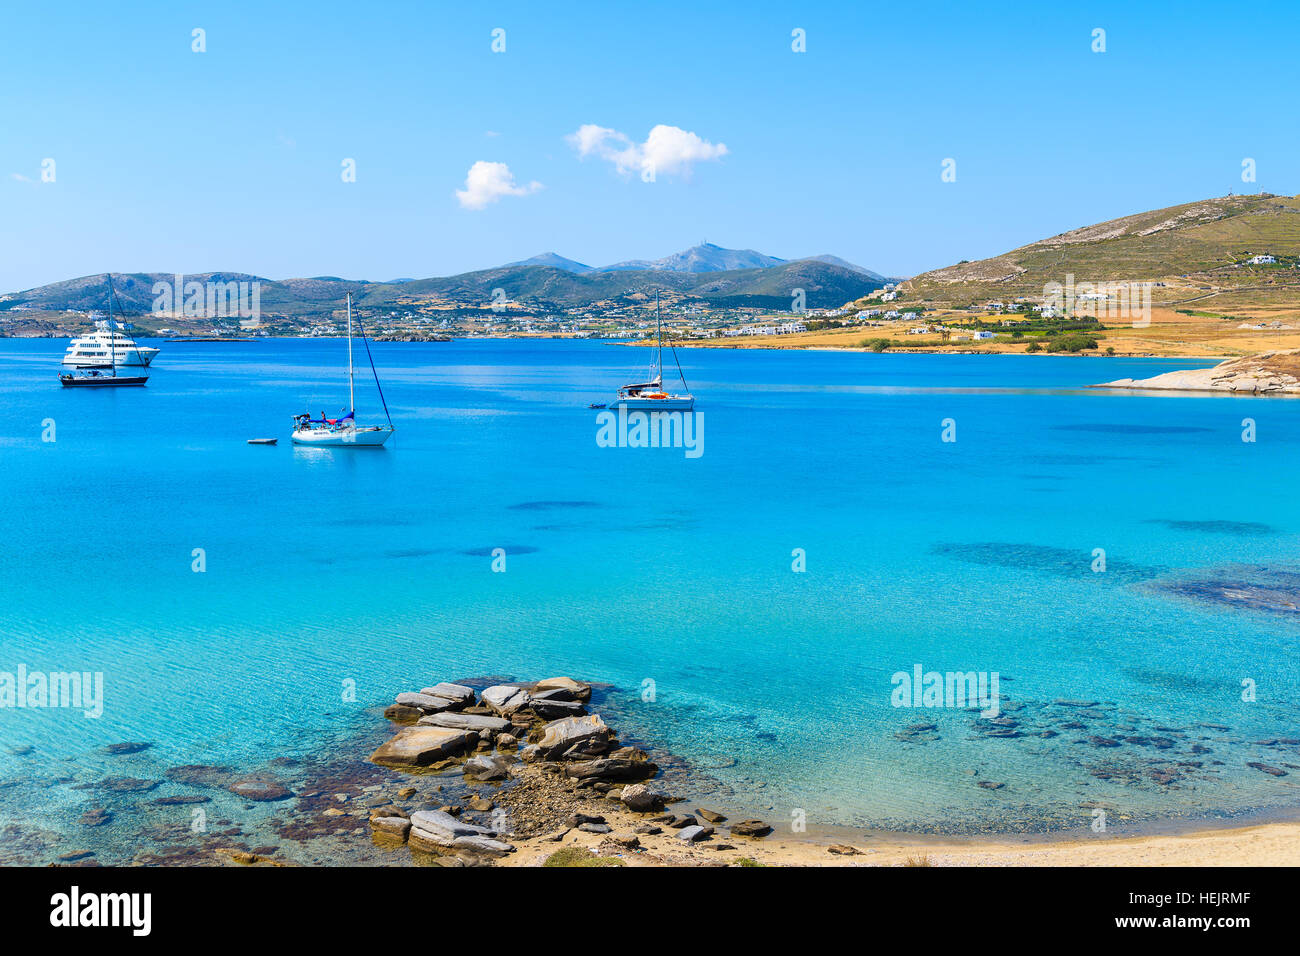 Bateaux à voile sur la mer d'Azur dans la baie de Monastiri sur l'île de Paros, Grèce Banque D'Images